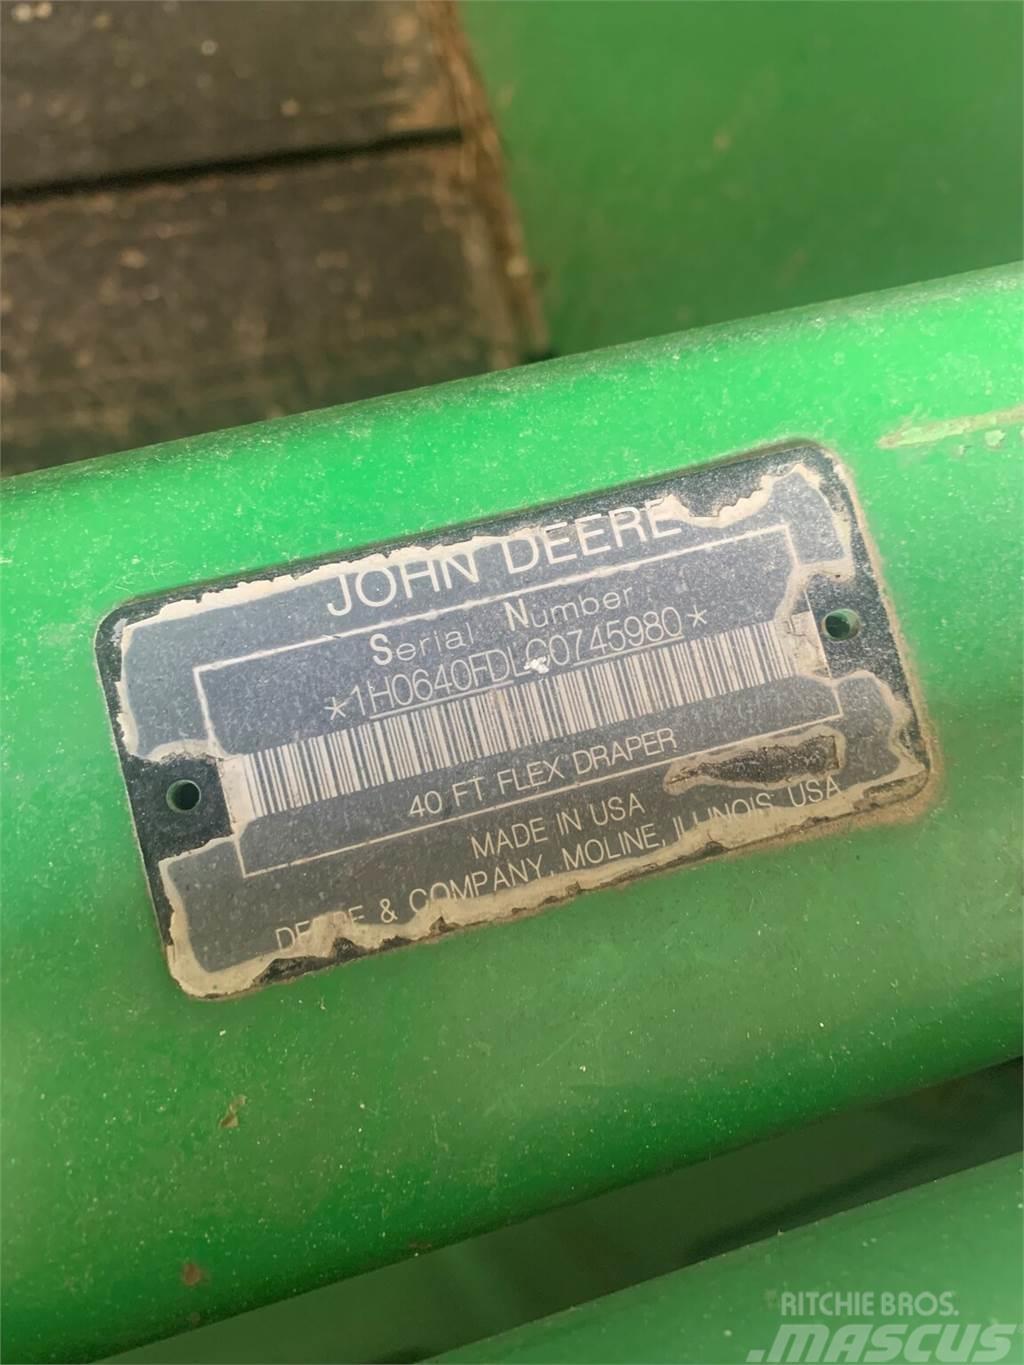 John Deere 640FD Combine harvester spares & accessories